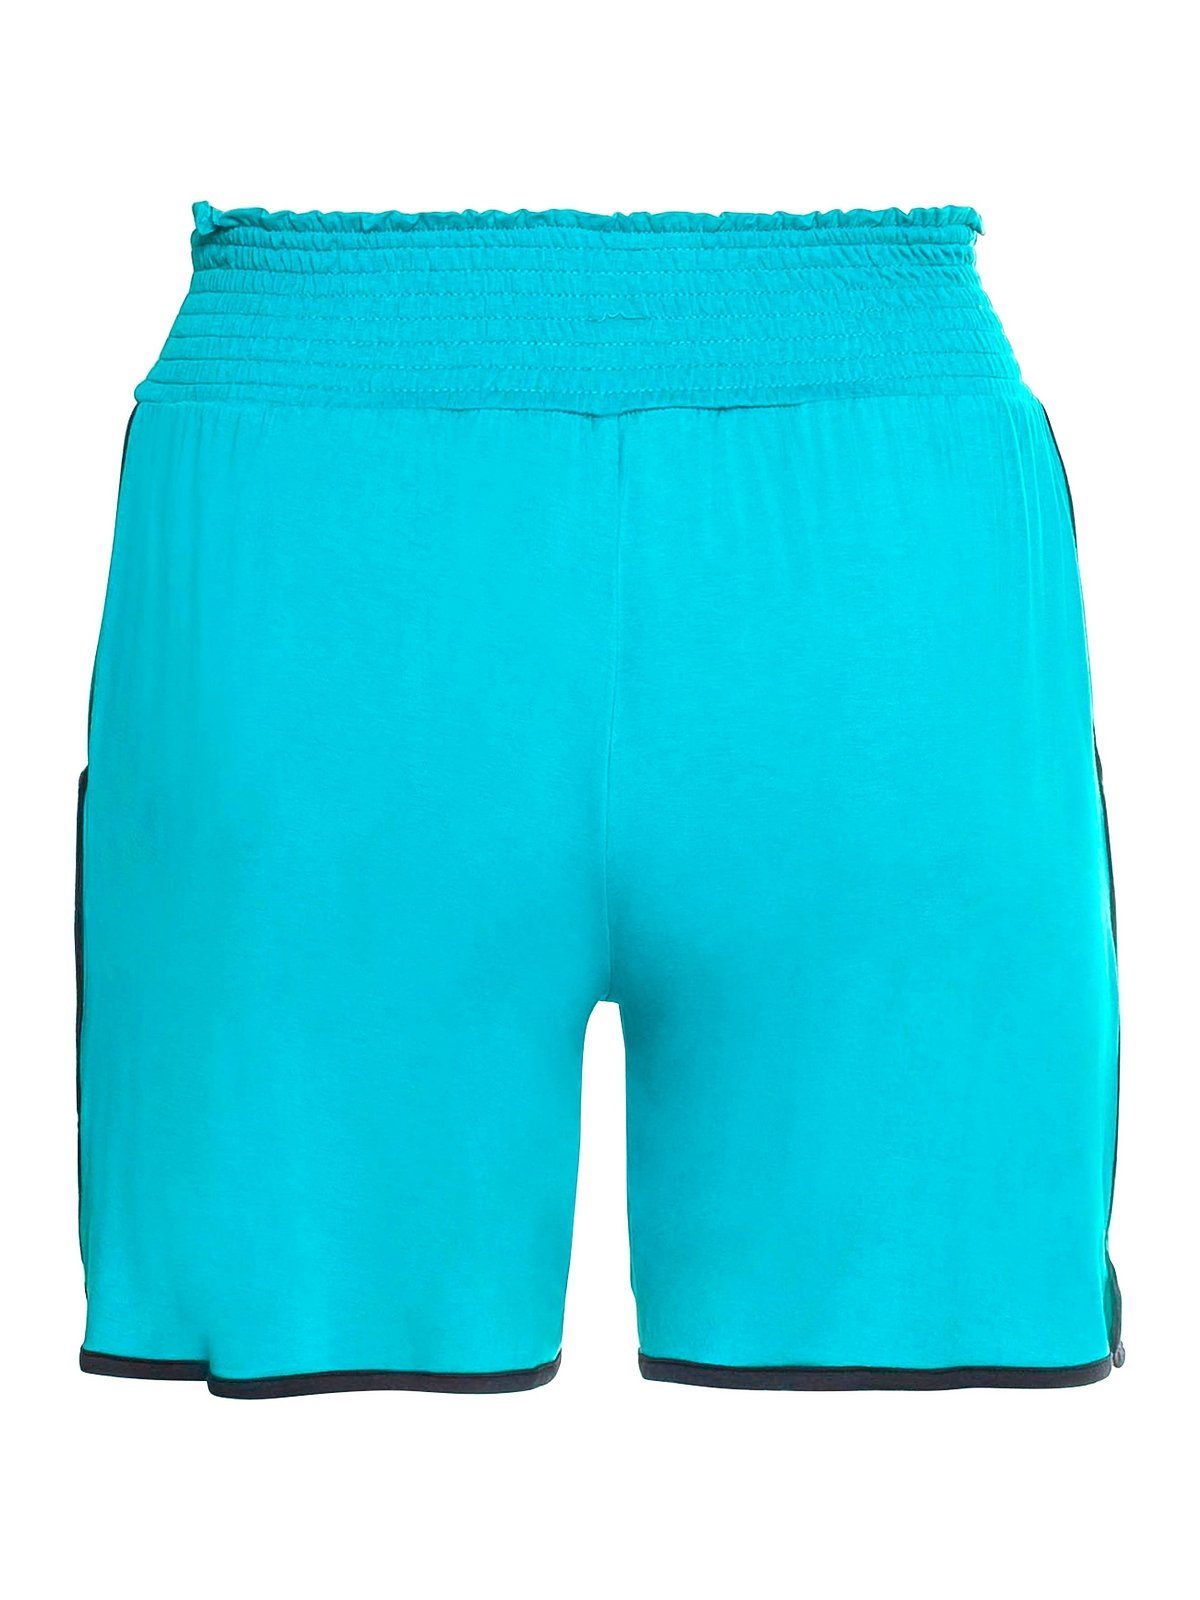 Damen Hosen Sheego Shorts Strandshorts mit Smokbund und Kontrastpaspeln